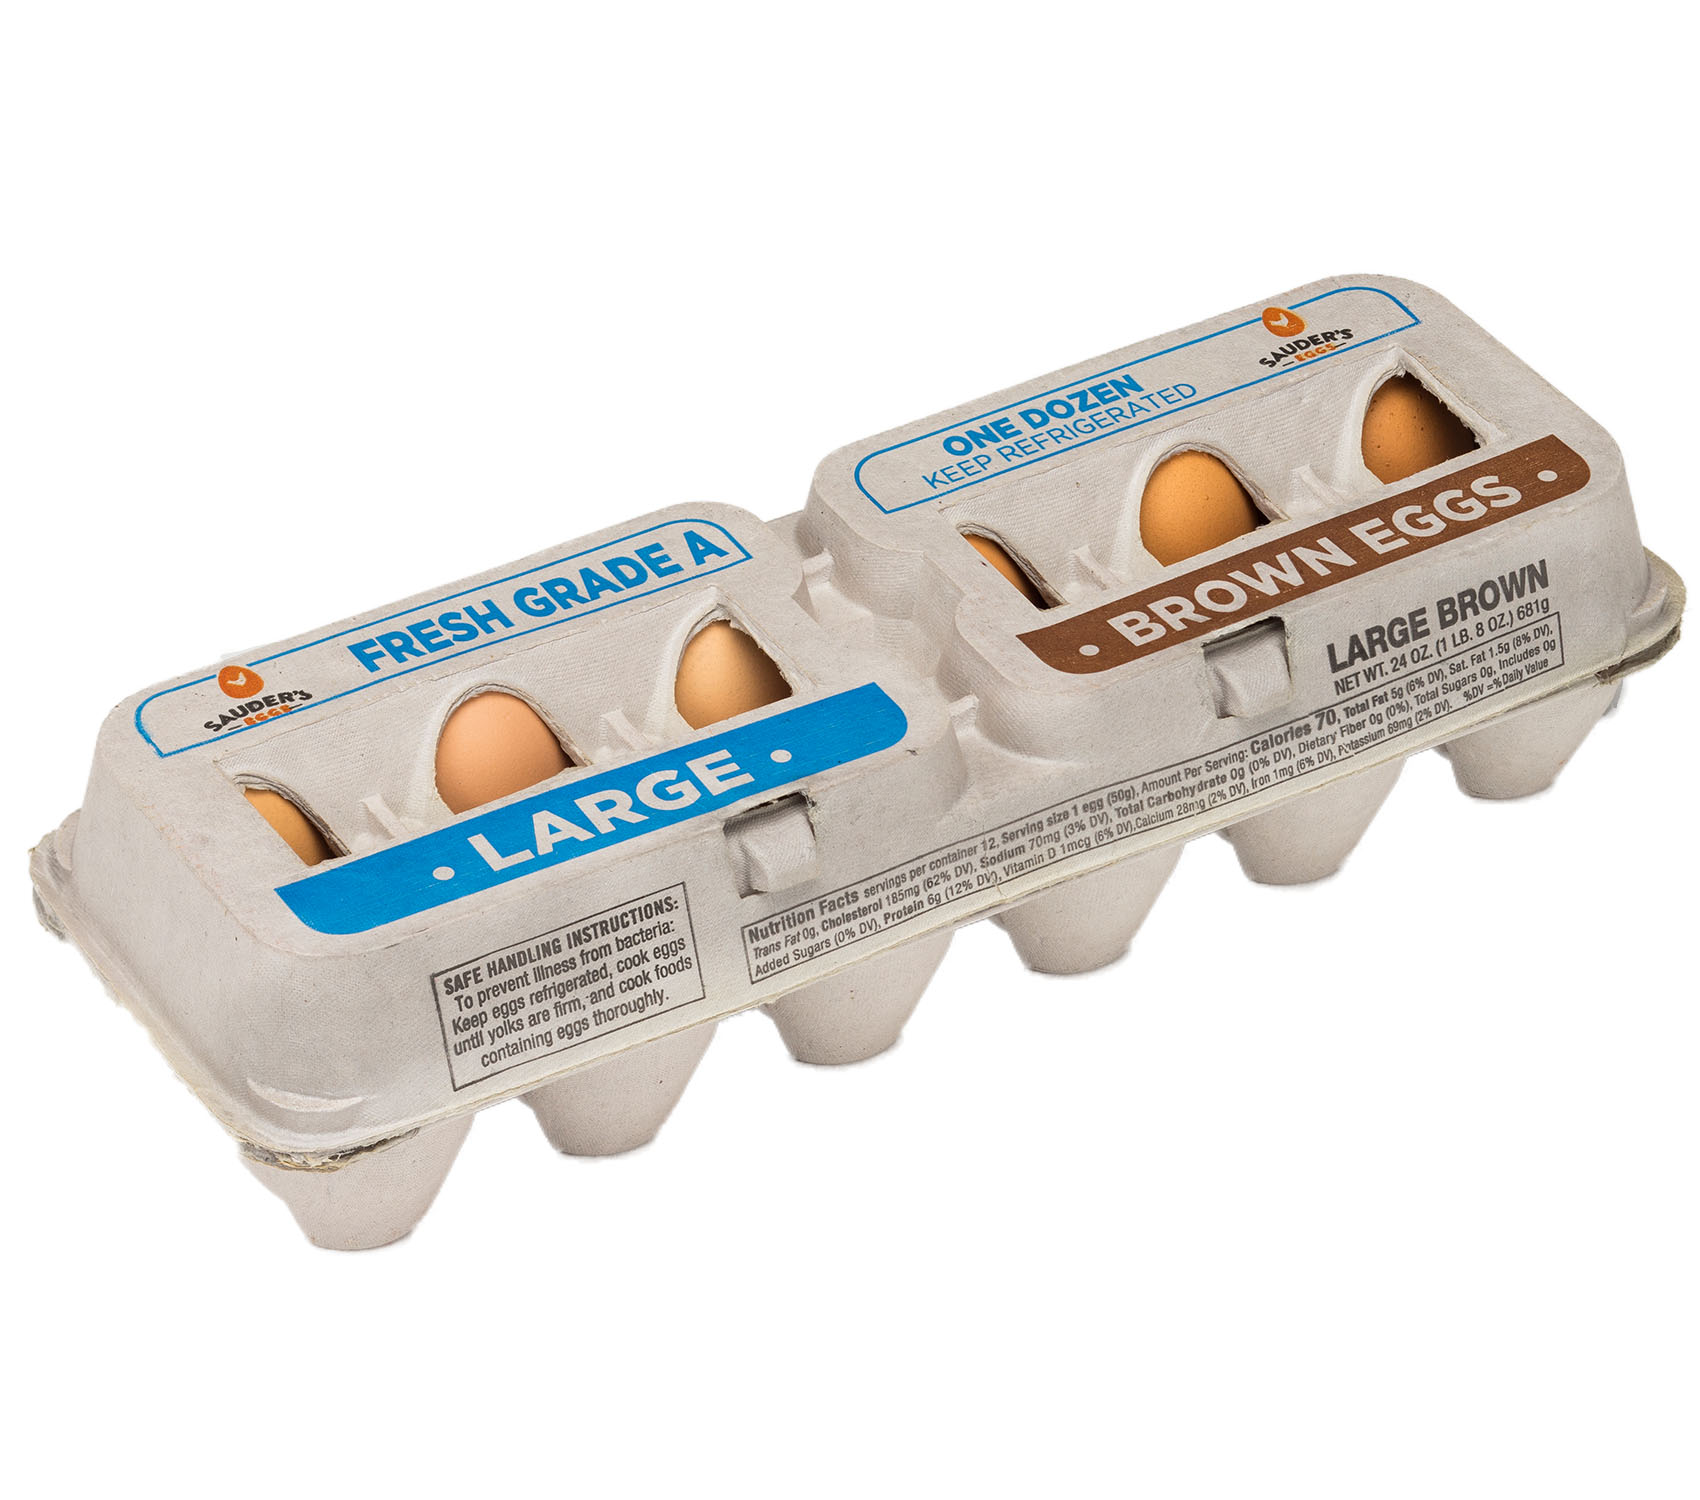 Sauder's Eggs 12 Grade A Large Brown Eggs egg carton